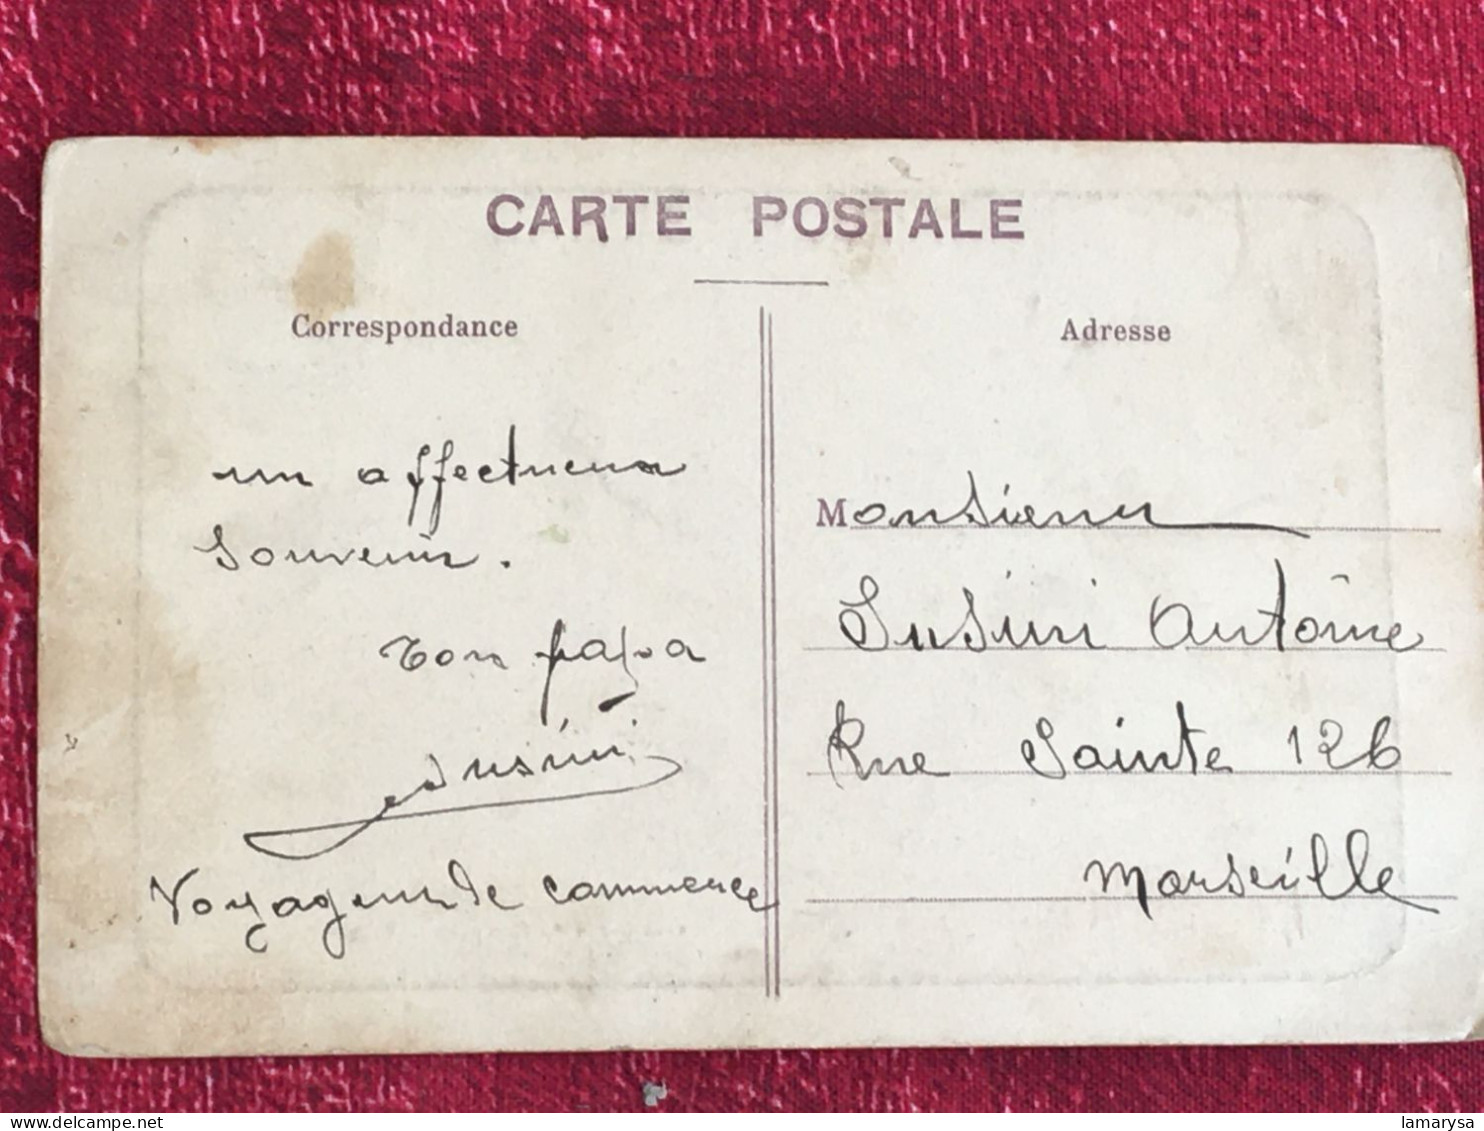 1909-Toul Garnison Caserne Monument Mémoire Francs Tireurs-avant Garde Camp Vacheresse Carte Postale-CPA-Thème Militaria - Monuments Aux Morts